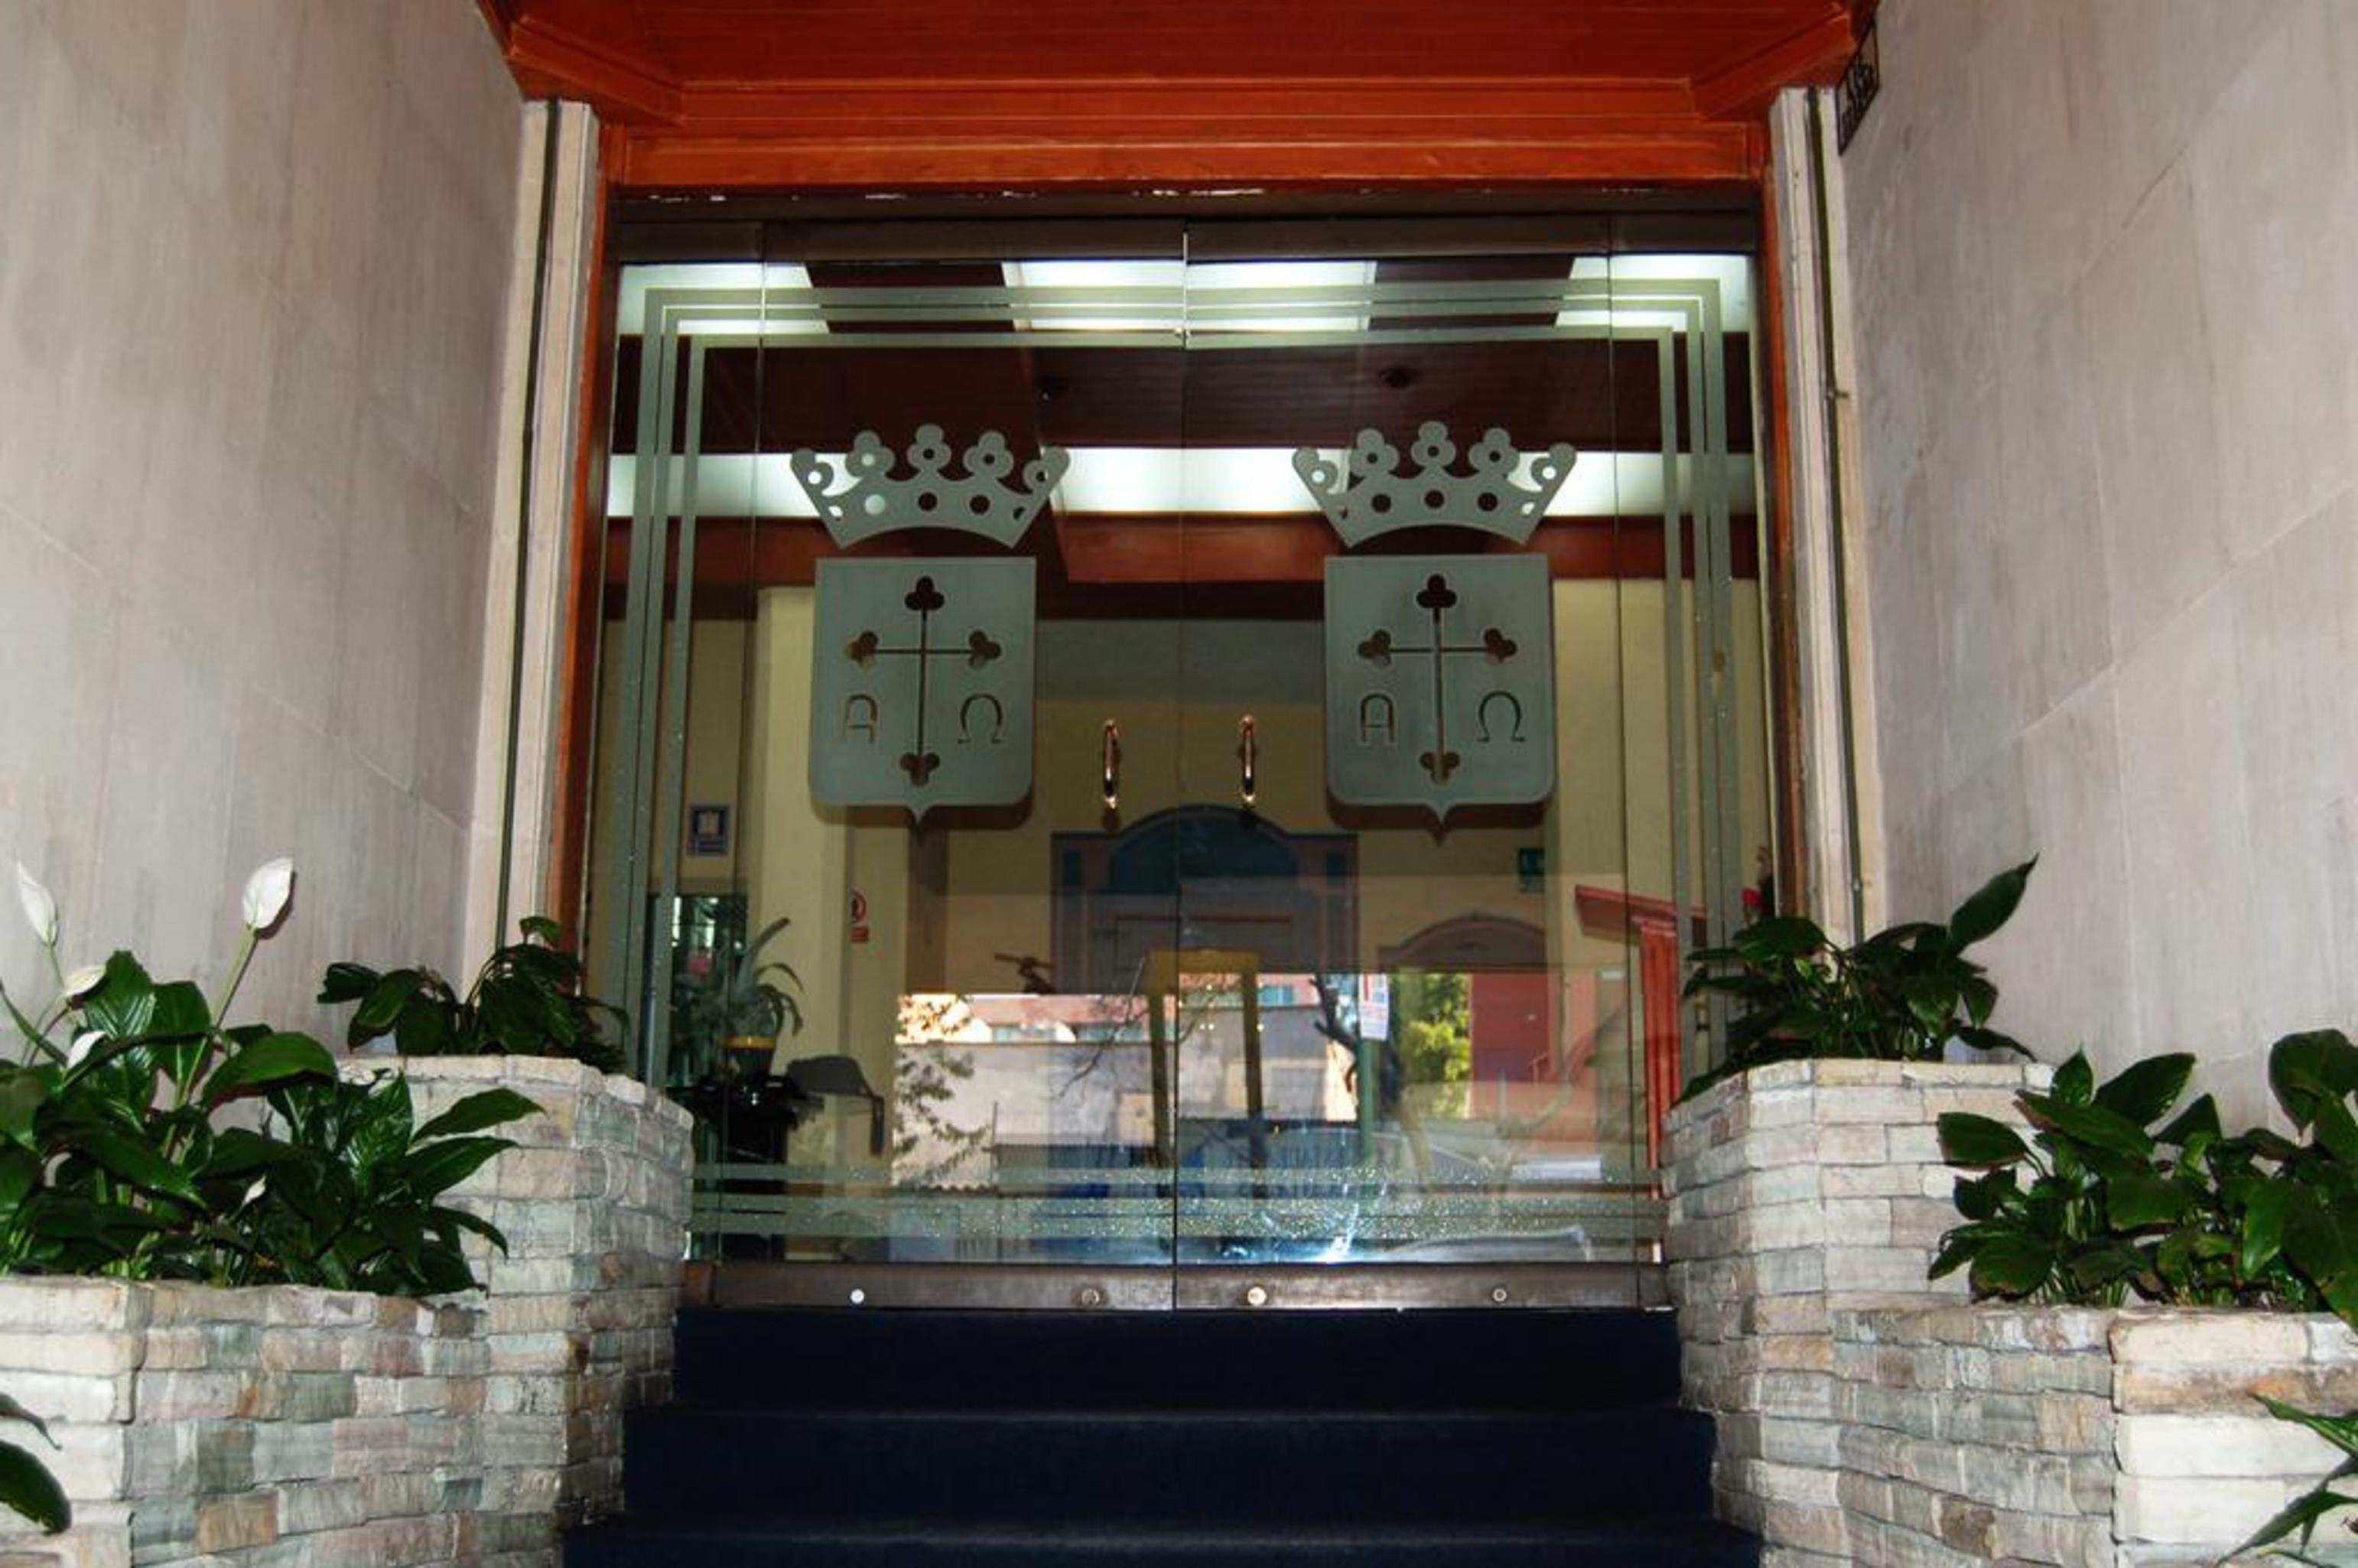 Hotel Del Principado Mexico City Exterior photo